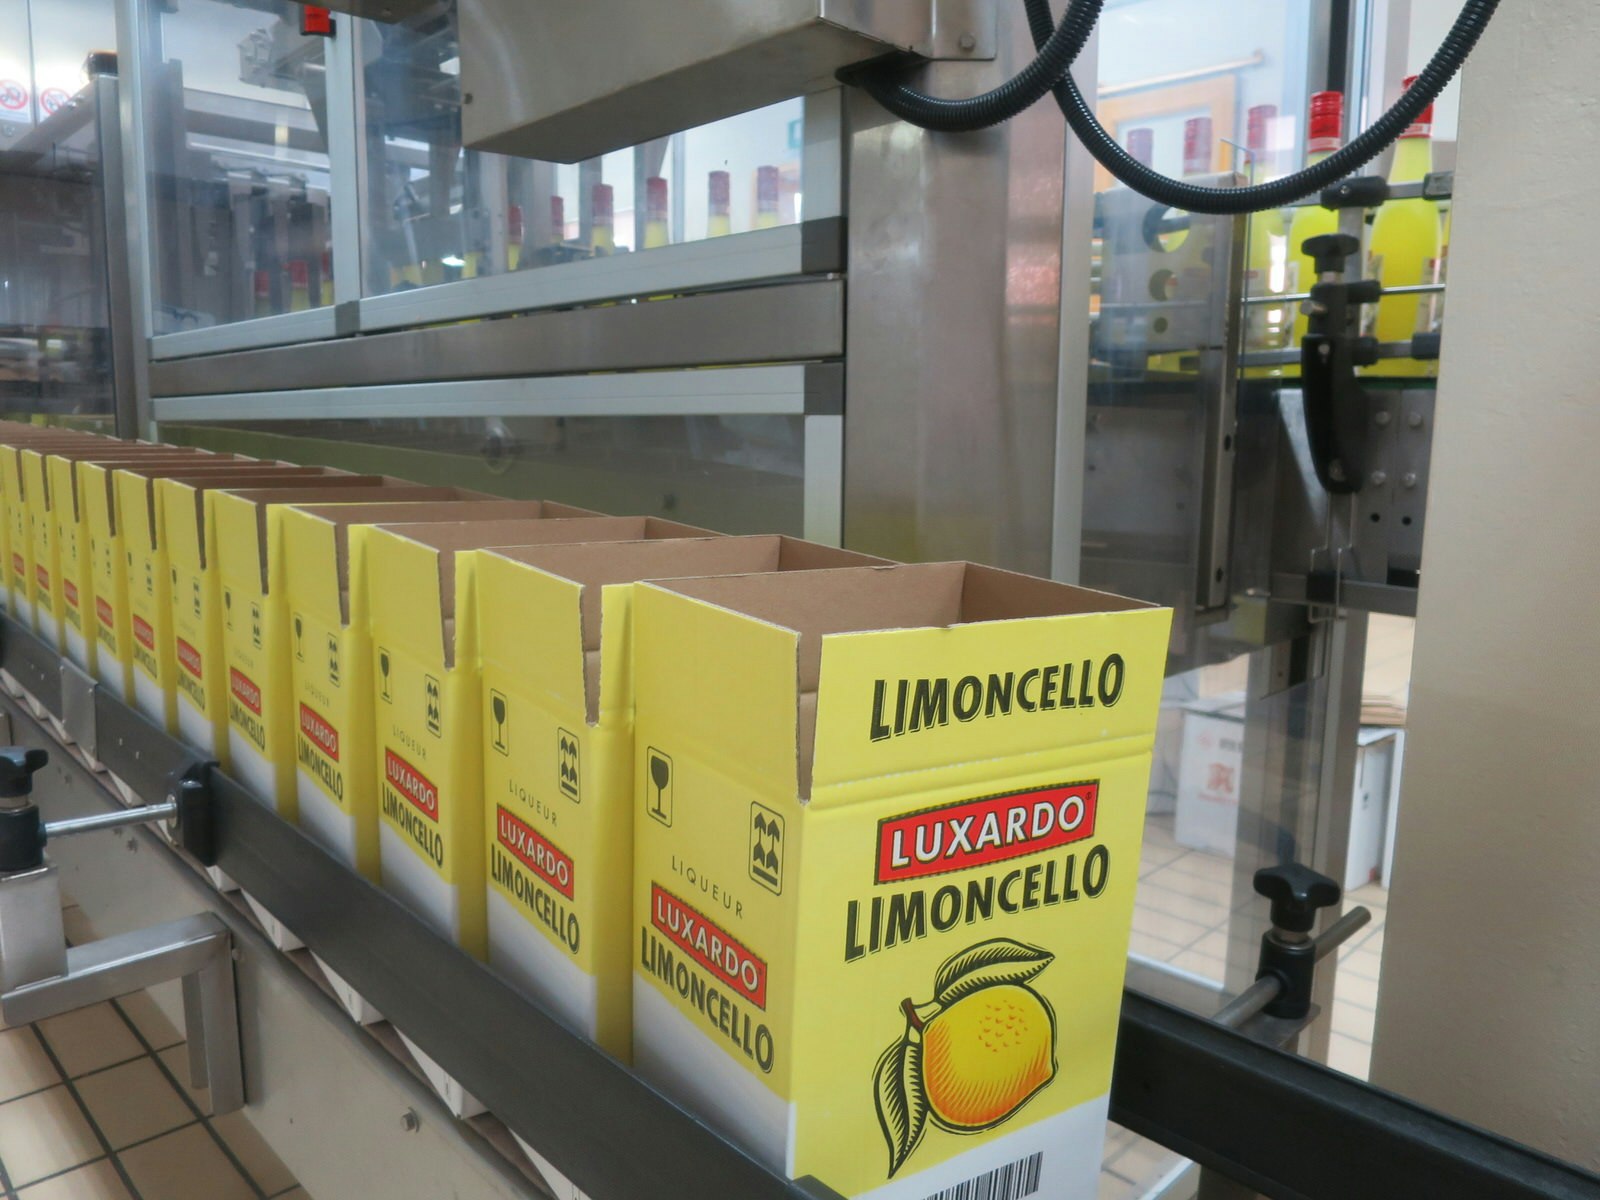 flera gula kartonger med märket Luxardo Limoncello är uppradade på ett löpande band, redo att förseglas